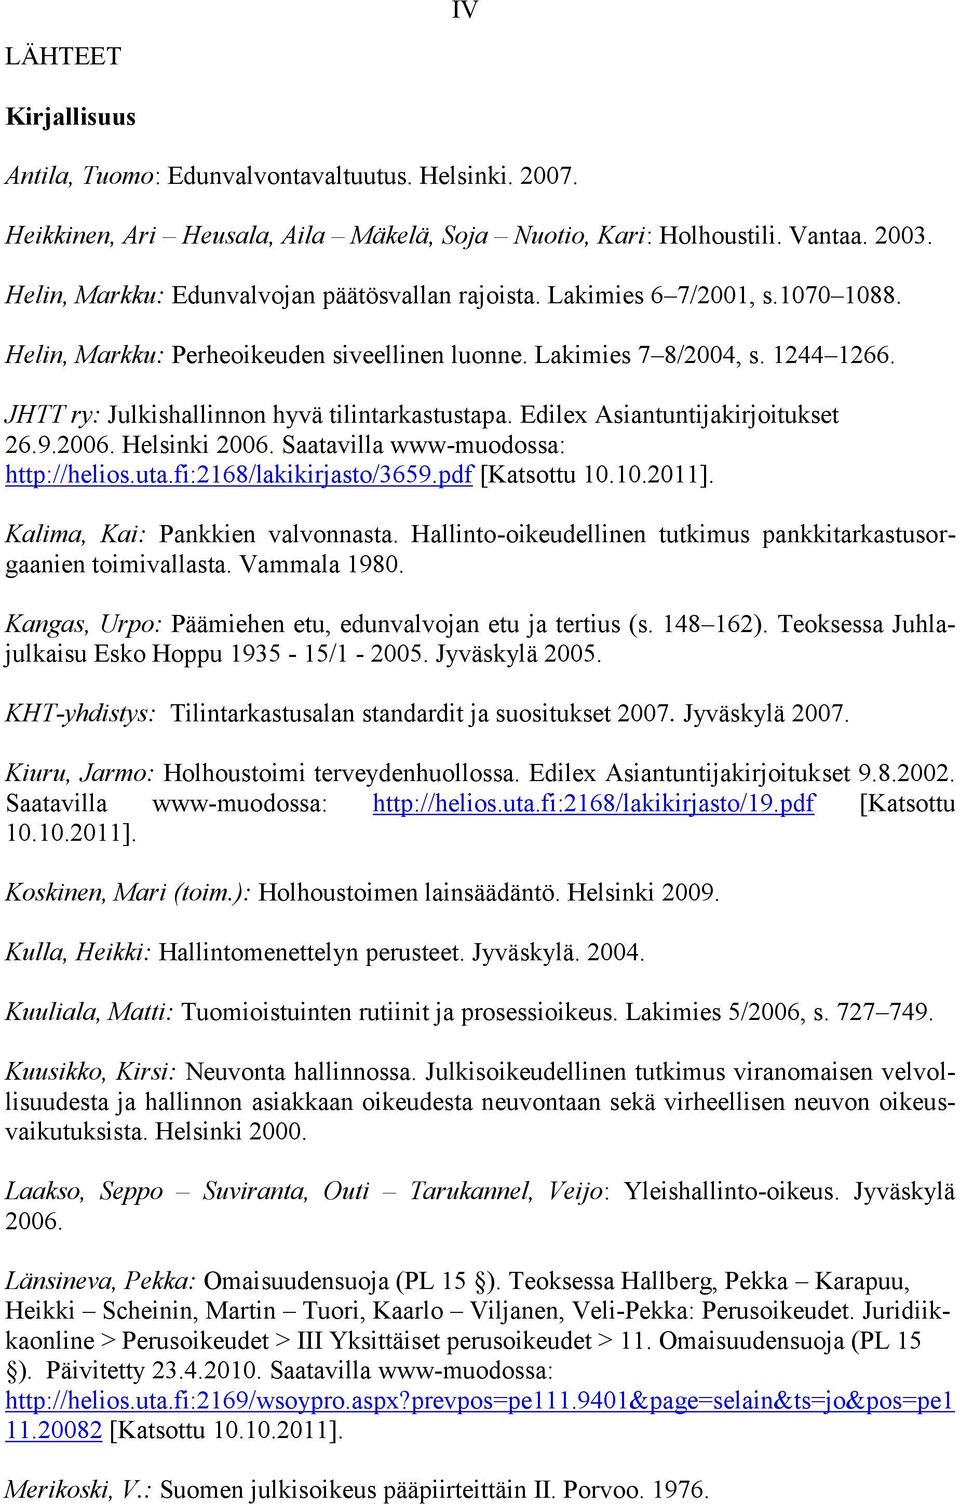 JHTT ry: Julkishallinnon hyvä tilintarkastustapa. Edilex Asiantuntijakirjoitukset 26.9.2006. Helsinki 2006. Saatavilla www-muodossa: http://helios.uta.fi:2168/lakikirjasto/3659.pdf [Katsottu 10.10.2011].